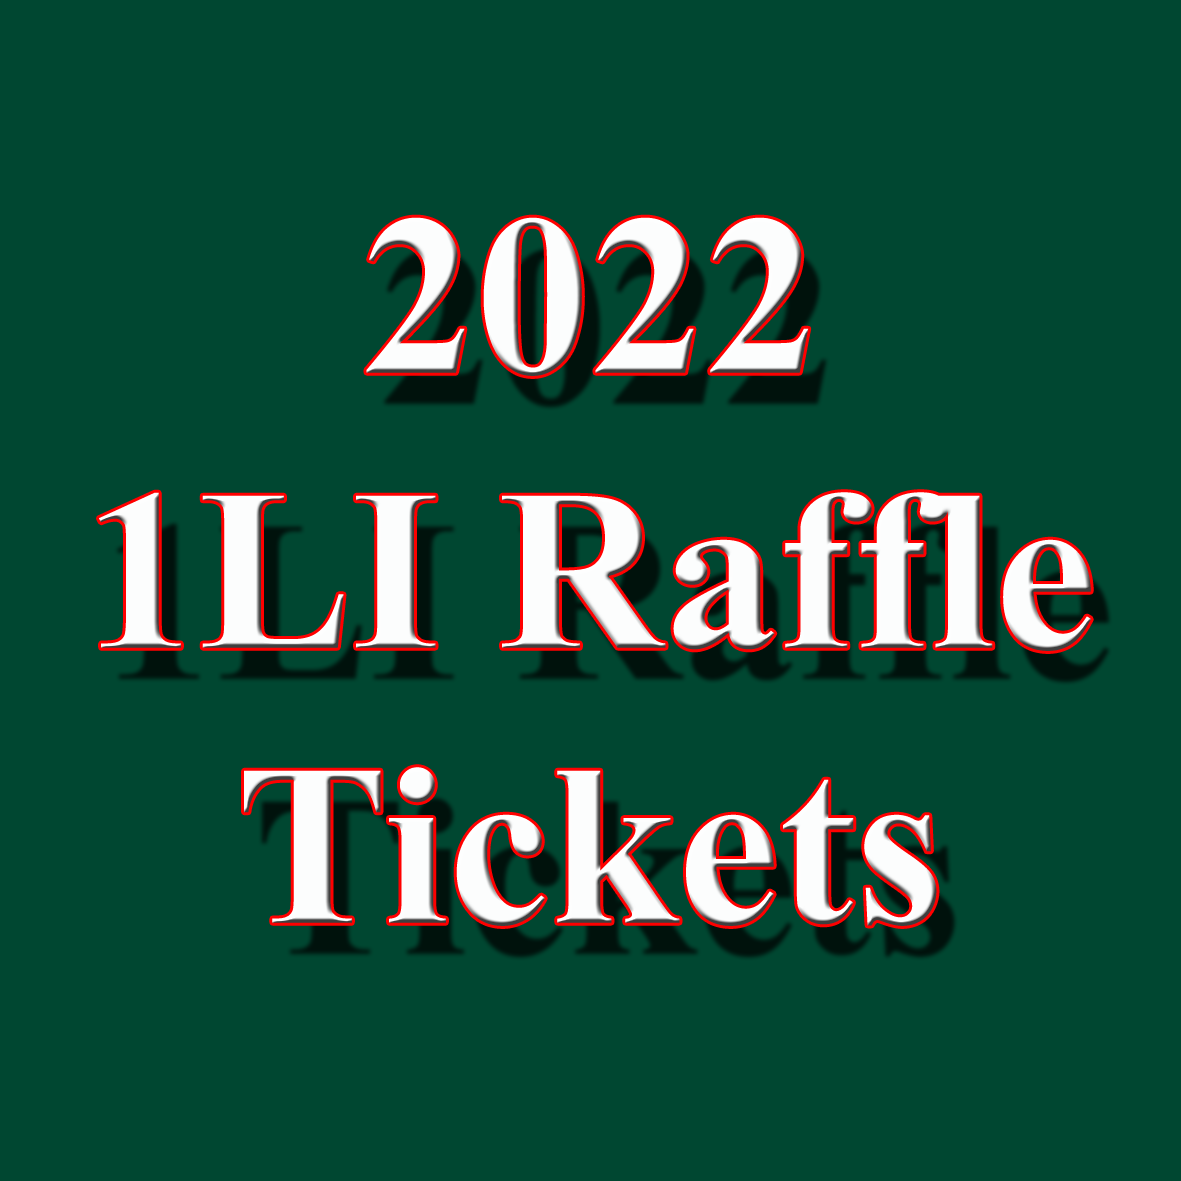 2022 1LI Raffle Tickets